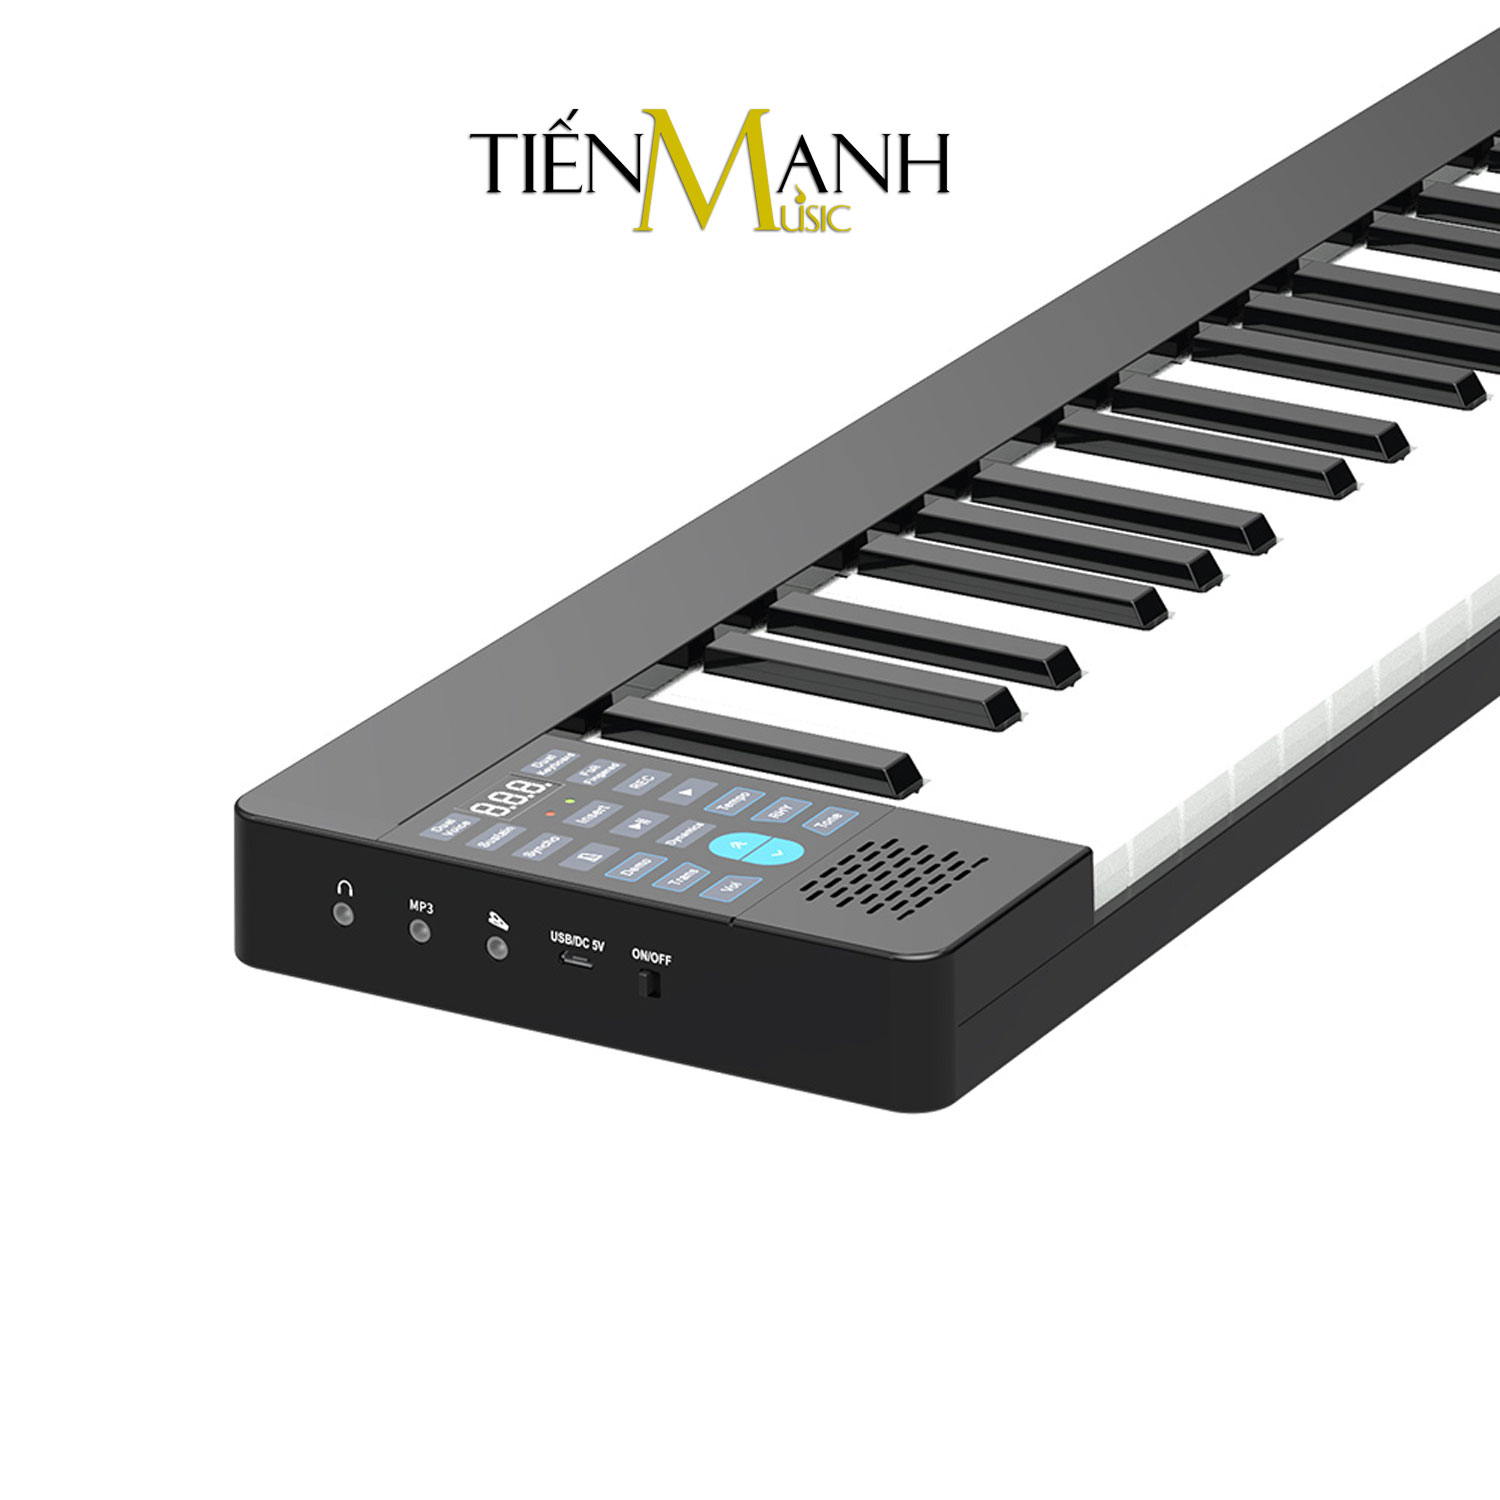 [Gấp Gọn] Đàn Piano Điện Konix PJ88B - 88 Phím Cảm Ứng Lực Có Loa PJ88 (Pin sạc, Bluetooth, Pedal Sustain, Bao Đựng) Hàng Chính Hãng - Kèm Móng Gẩy DreamMaker